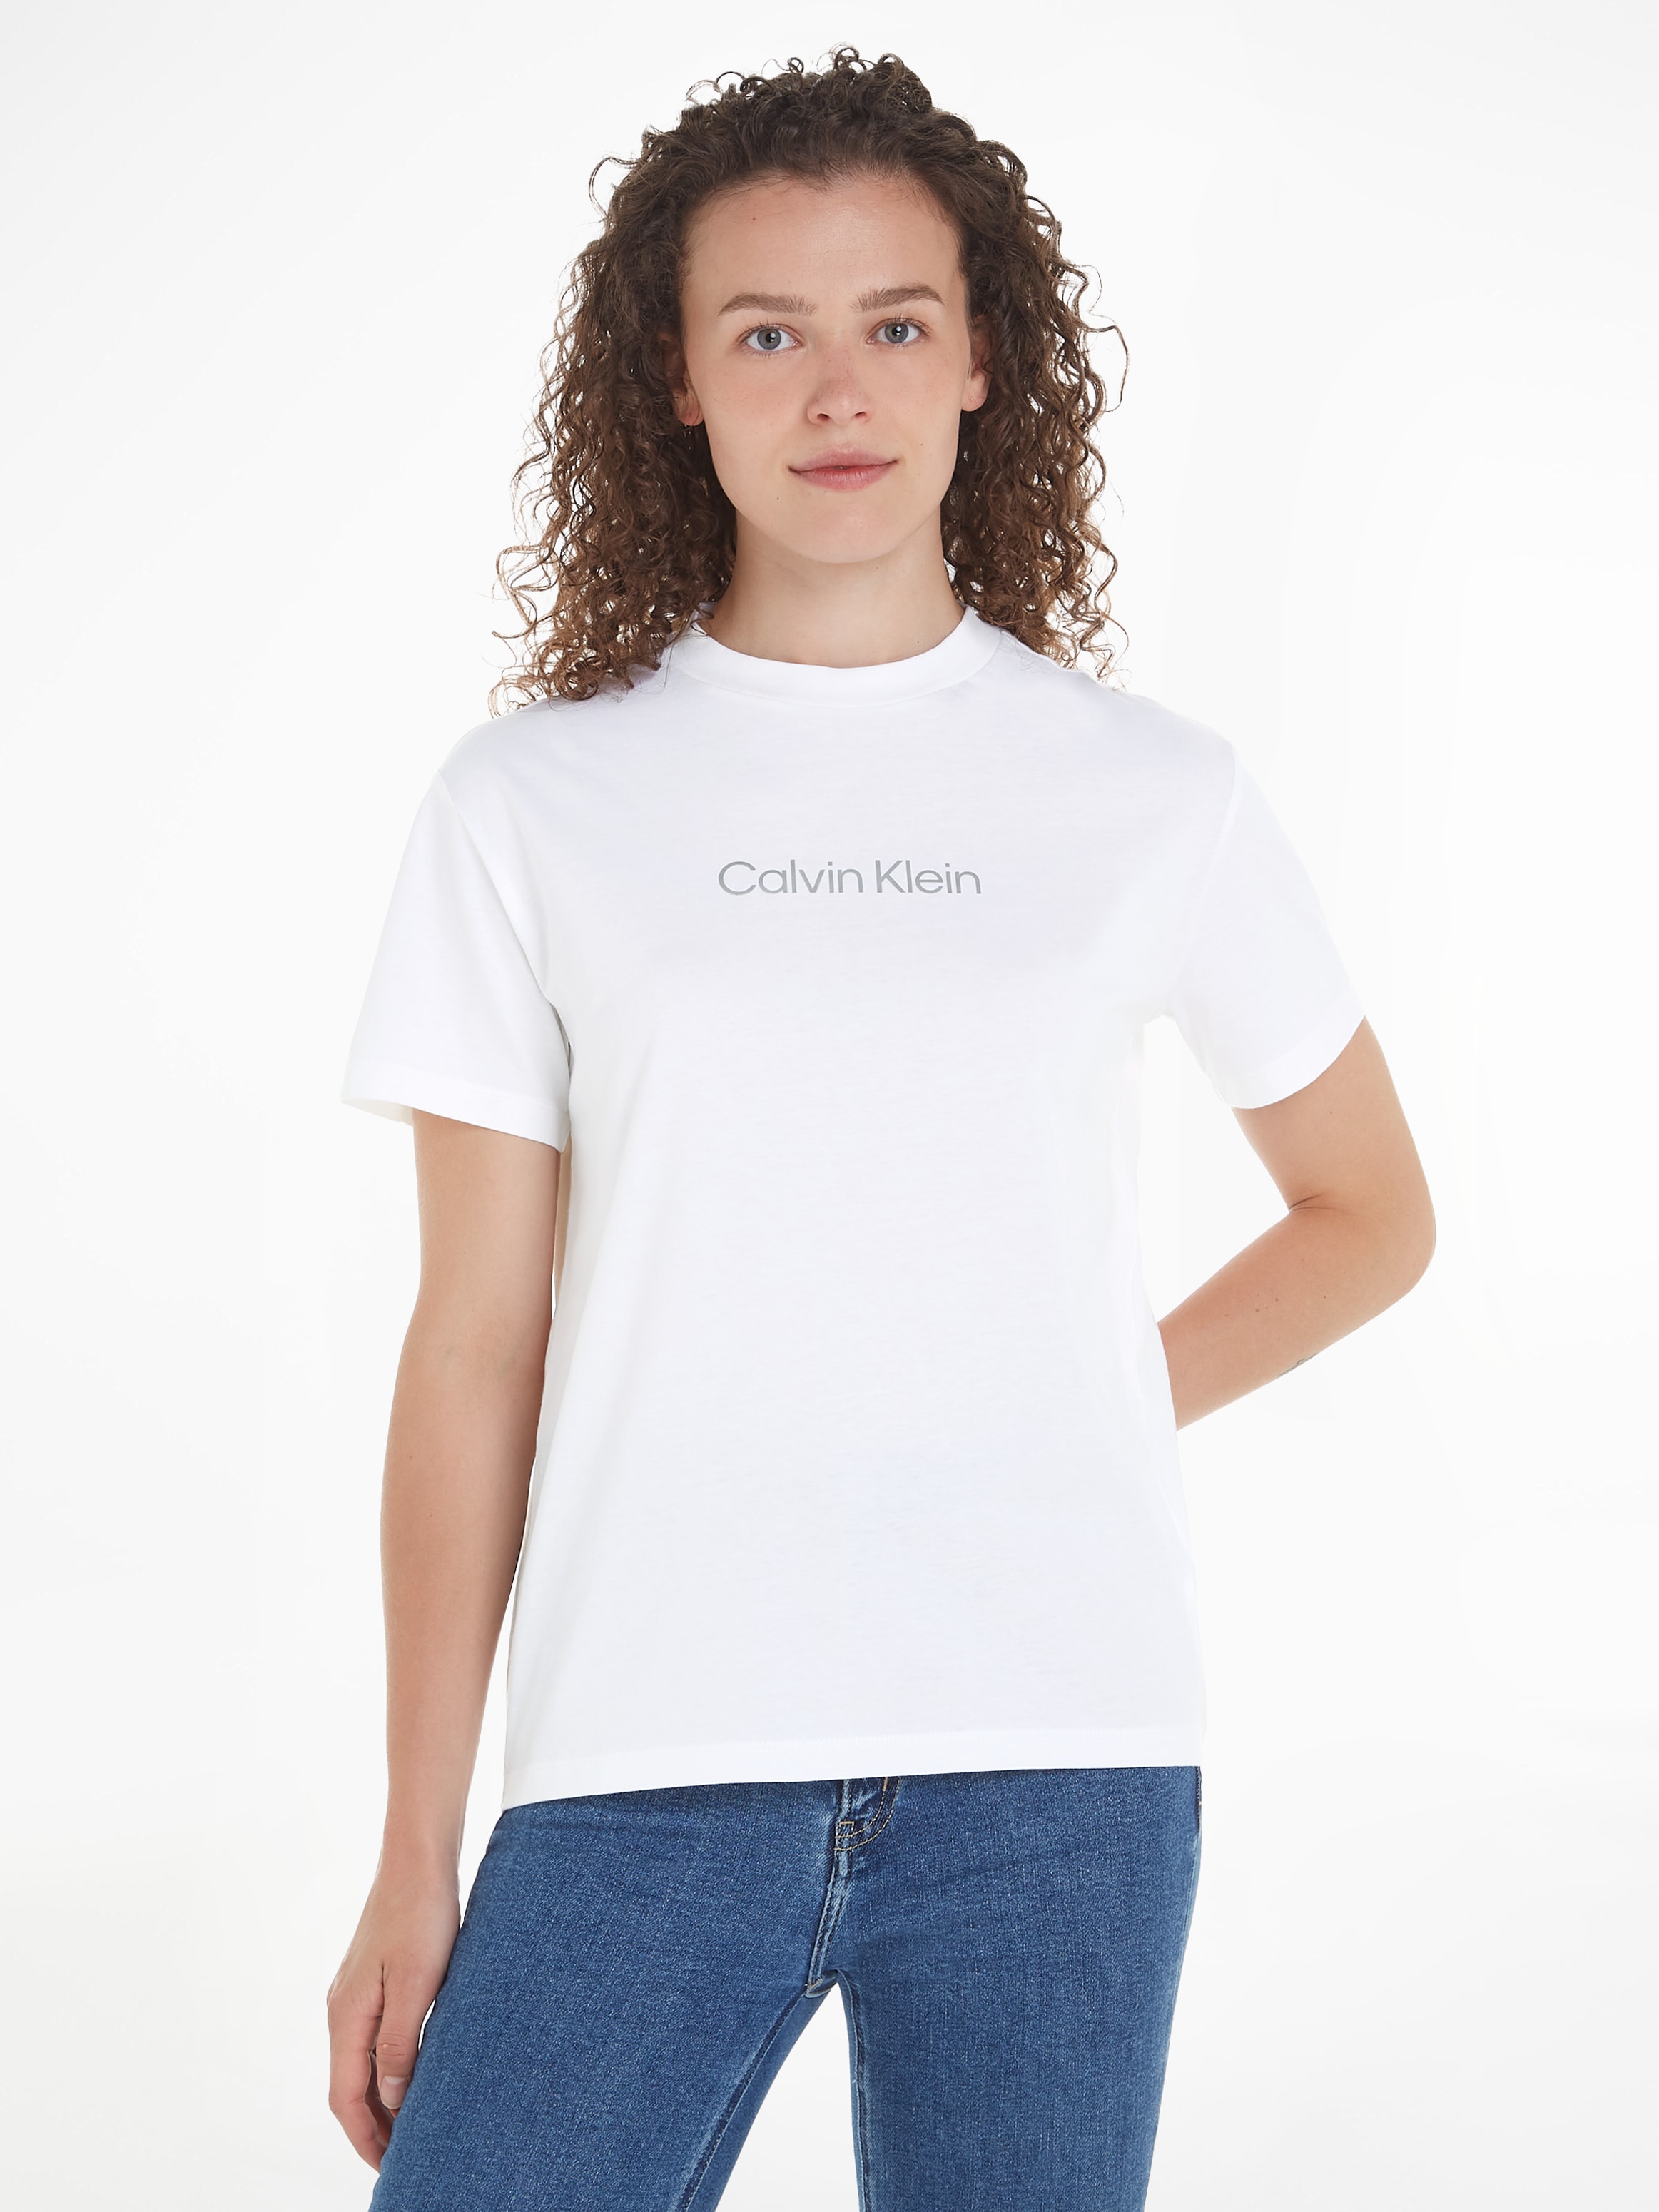 Print LOGO Klein Klein Brust mit ♕ auf bei Calvin METALLIC T-Shirt T-SHIRT«, der Calvin »HERO